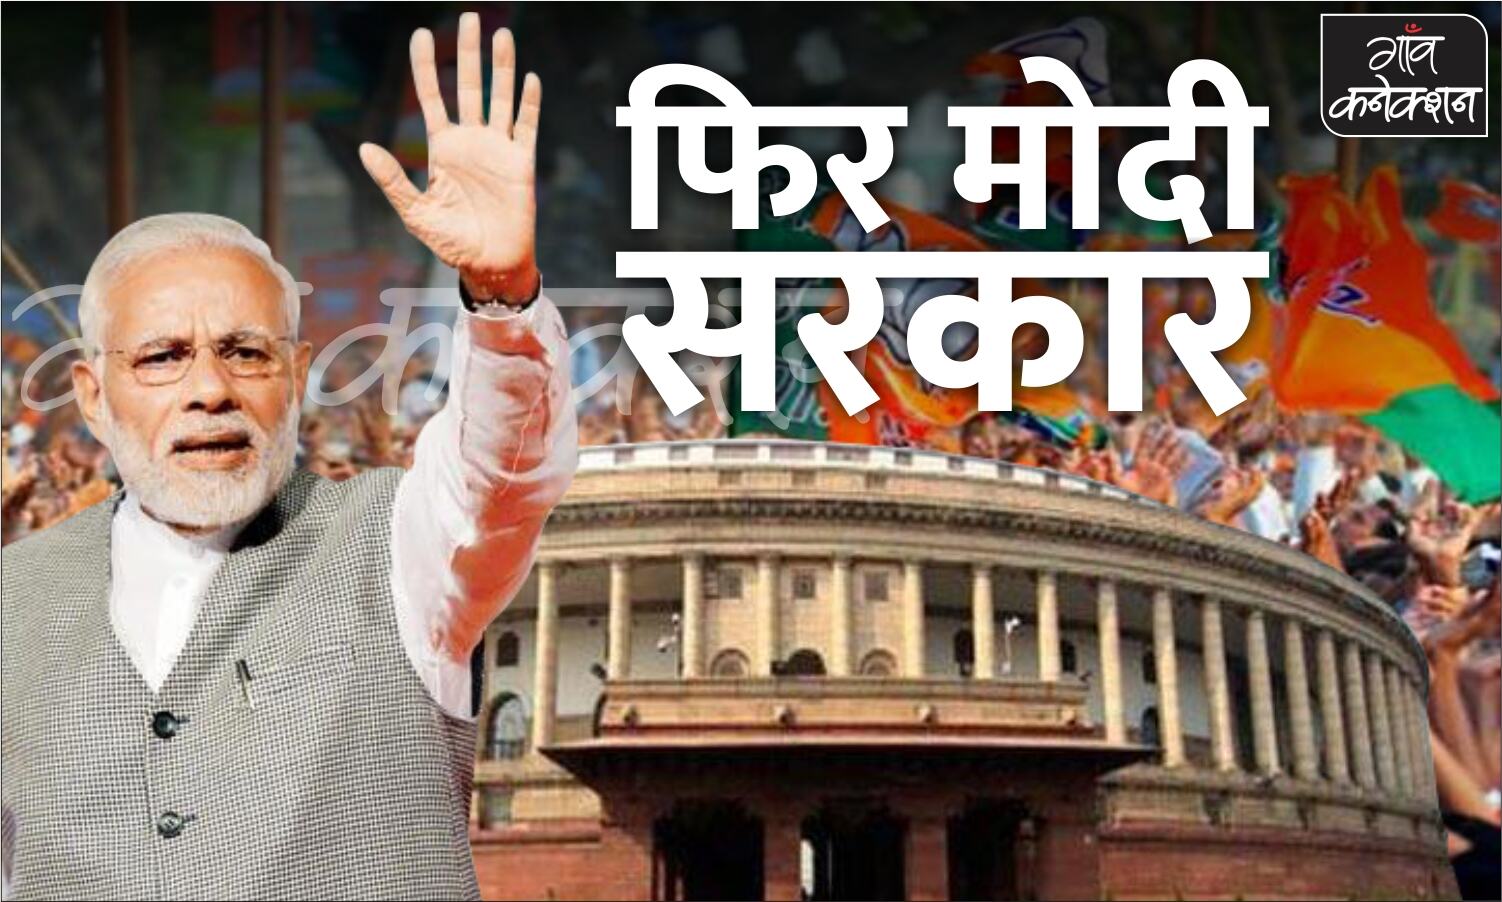 Lok Sabha Elections results 2019: मध्य प्रदेश और छत्तीसगढ़ में भी चला प्रधानमंत्री मोदी का जादू